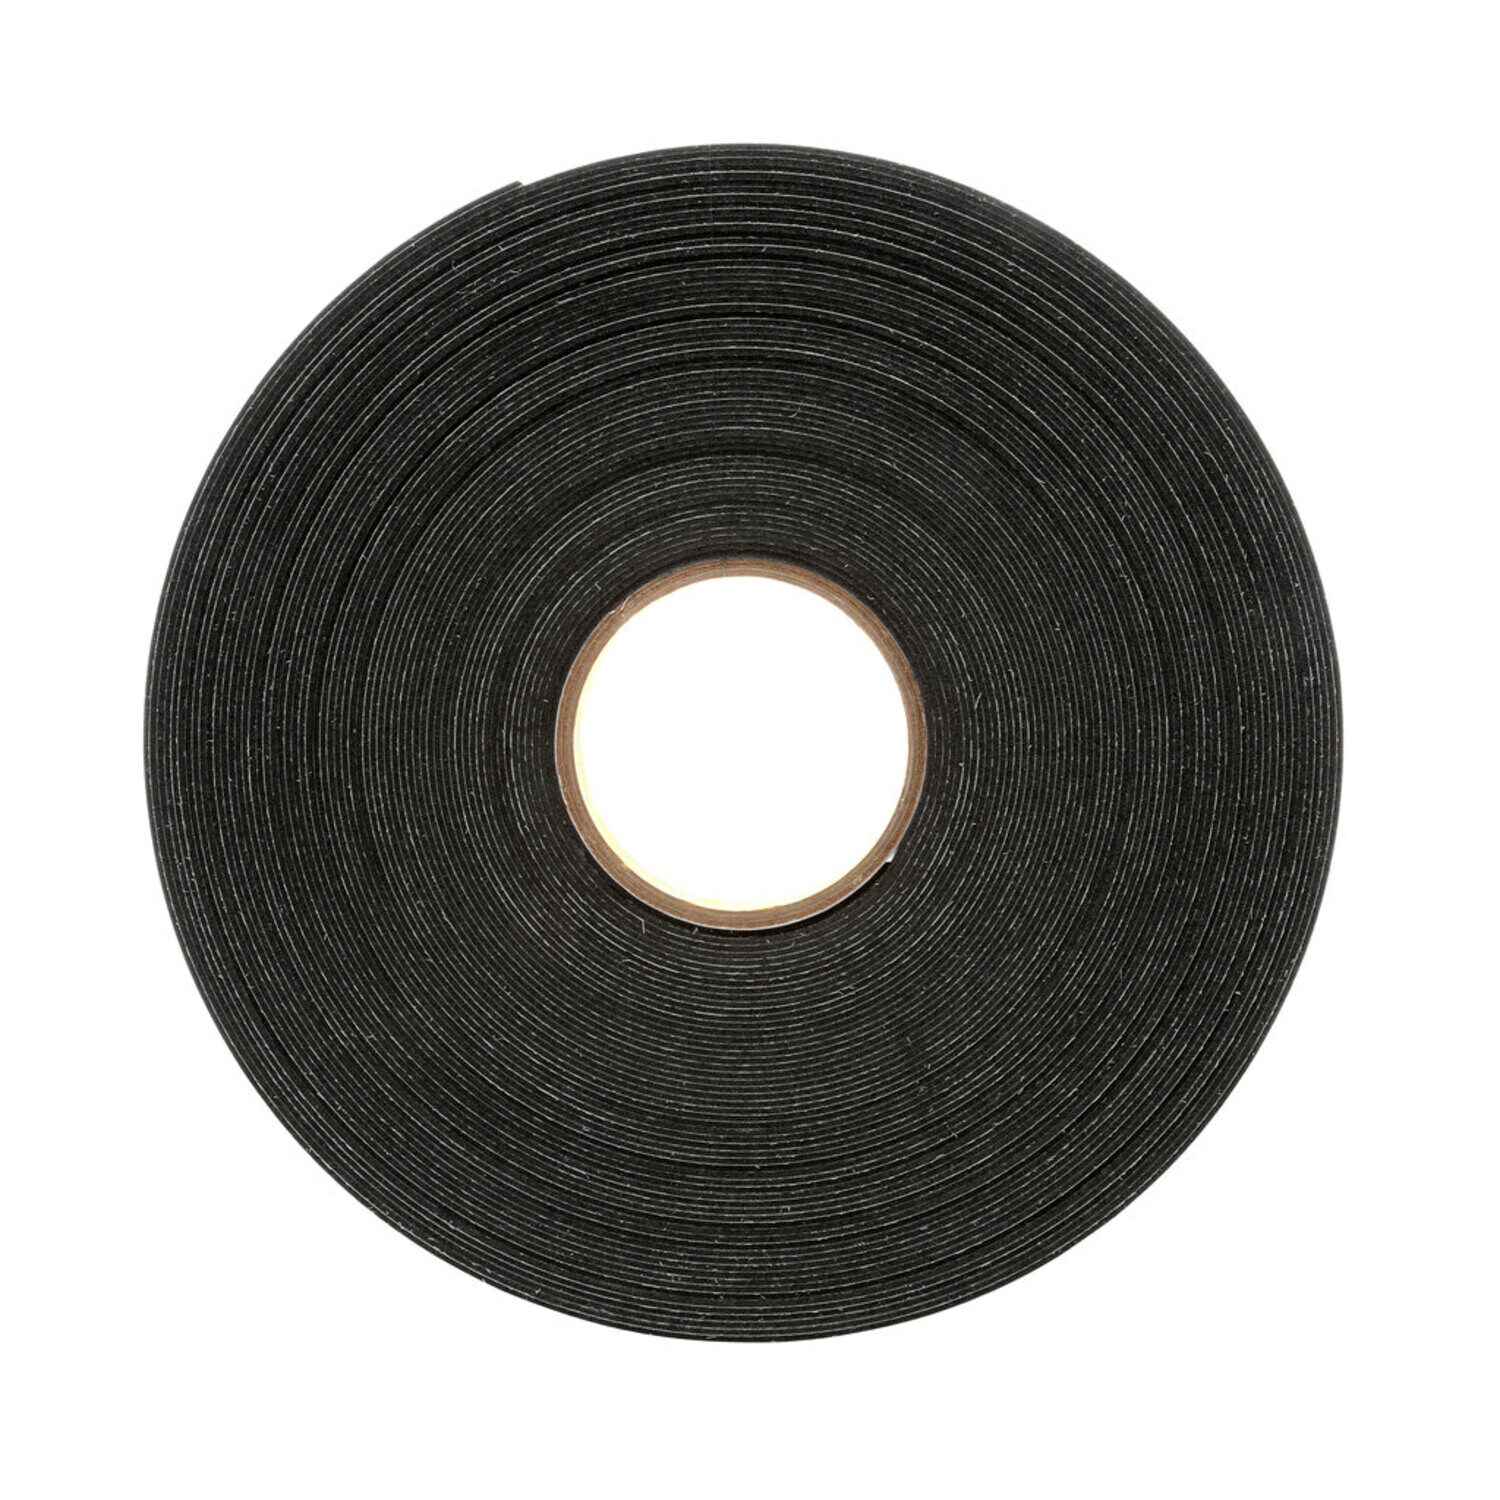 7010373742 - 3M Double Coated Polyethylene Foam Tape 4462, Black, 1/4 in x 72 yd, 31
mil, 36 rolls per case